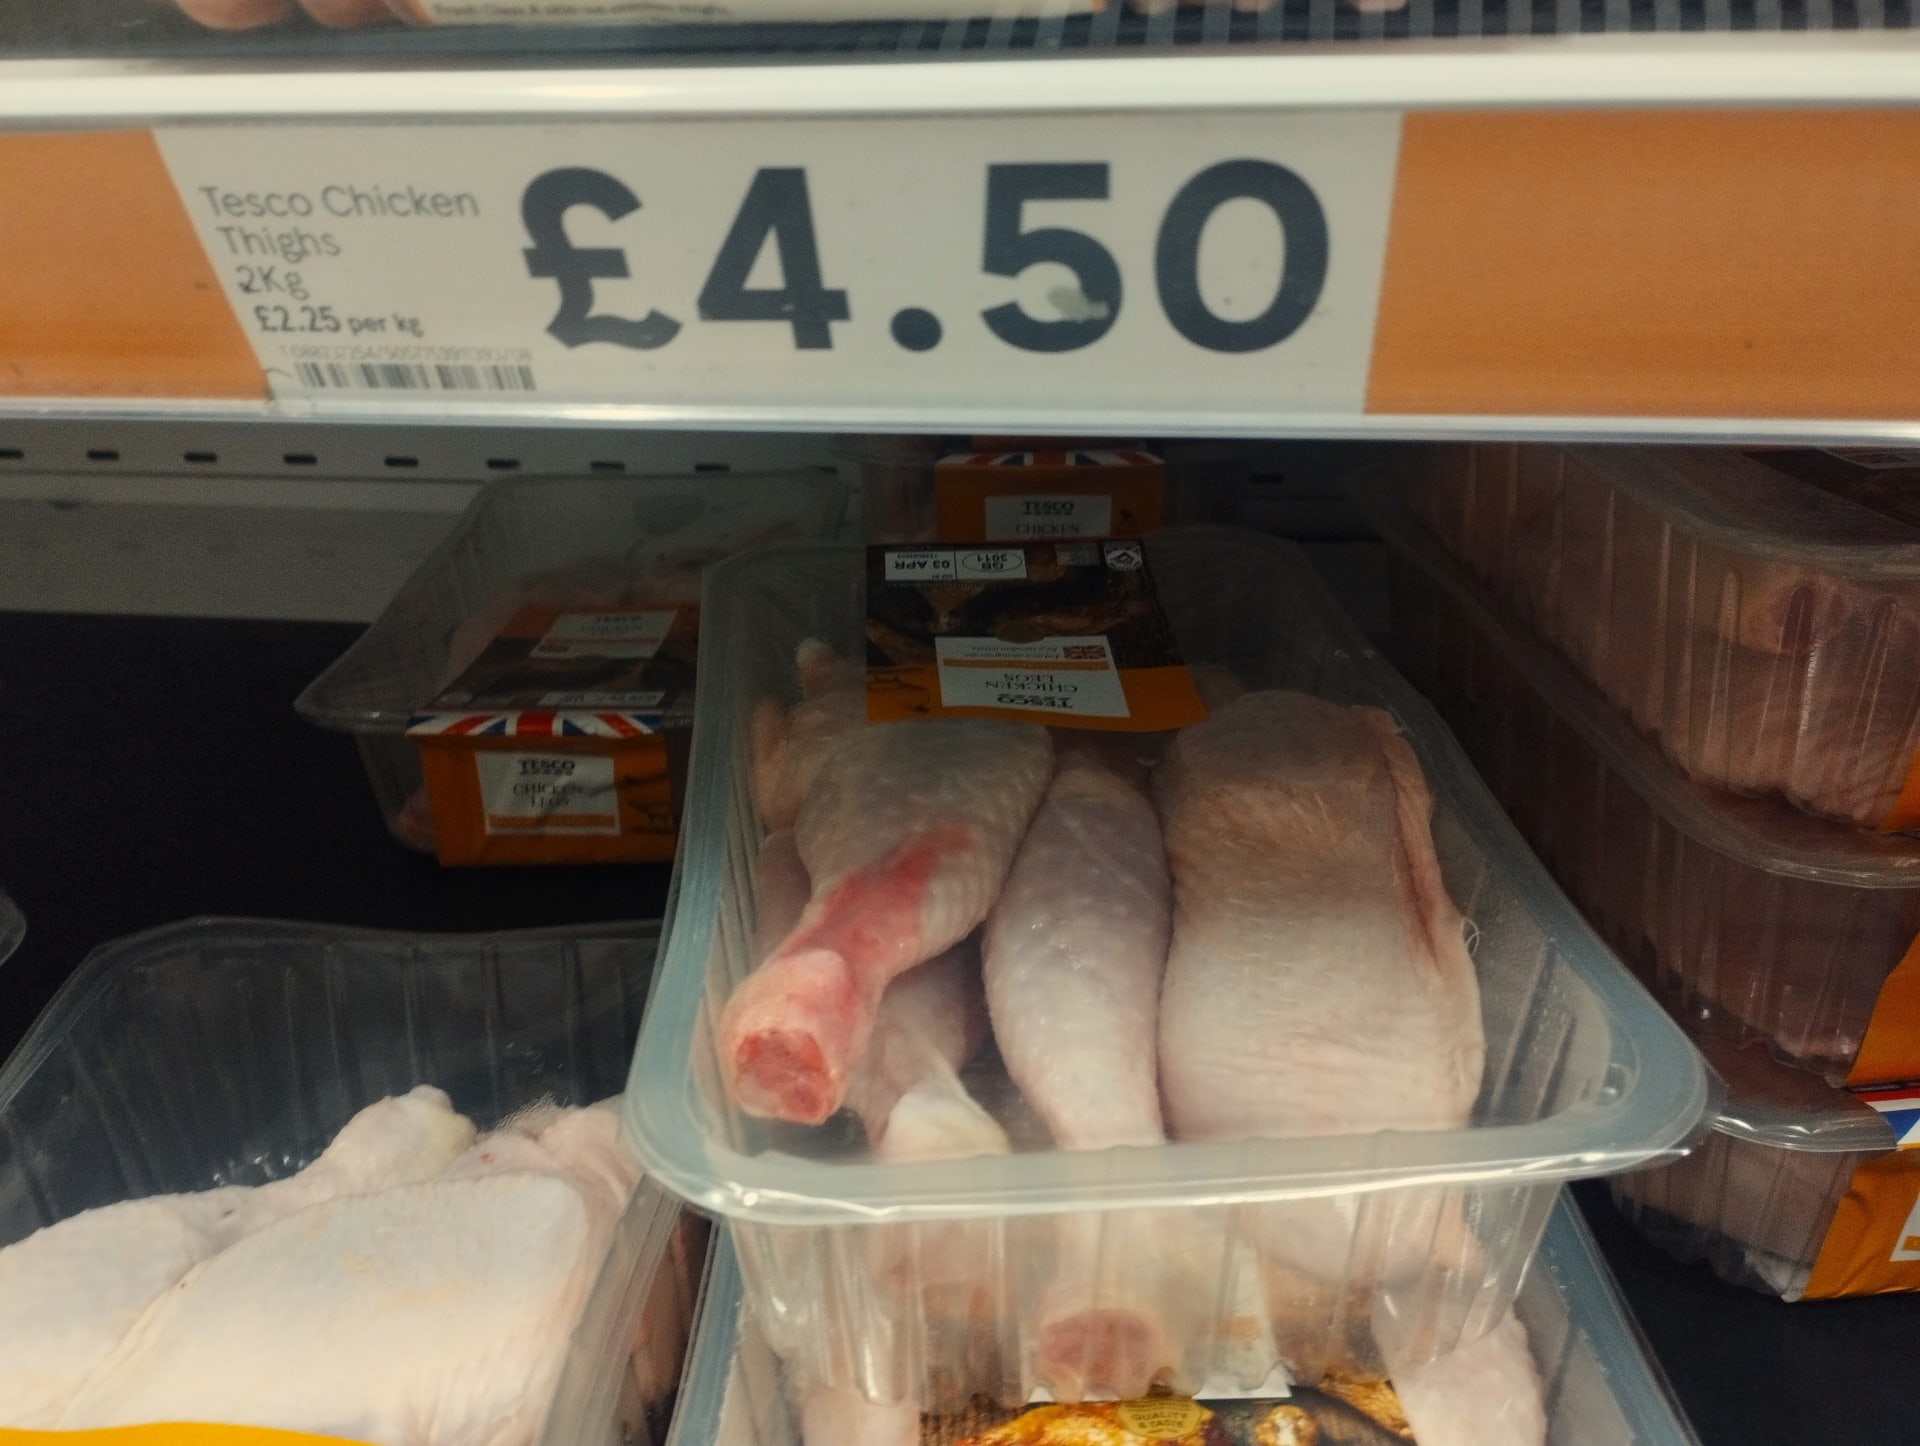 Výrazně nižší ceny než v Česku jsou ve Spojeném království celoroční, třeba dva kilogramy kuřecích stehen stojí stabilně 4,50 libry, tedy kilo 67 Kč.